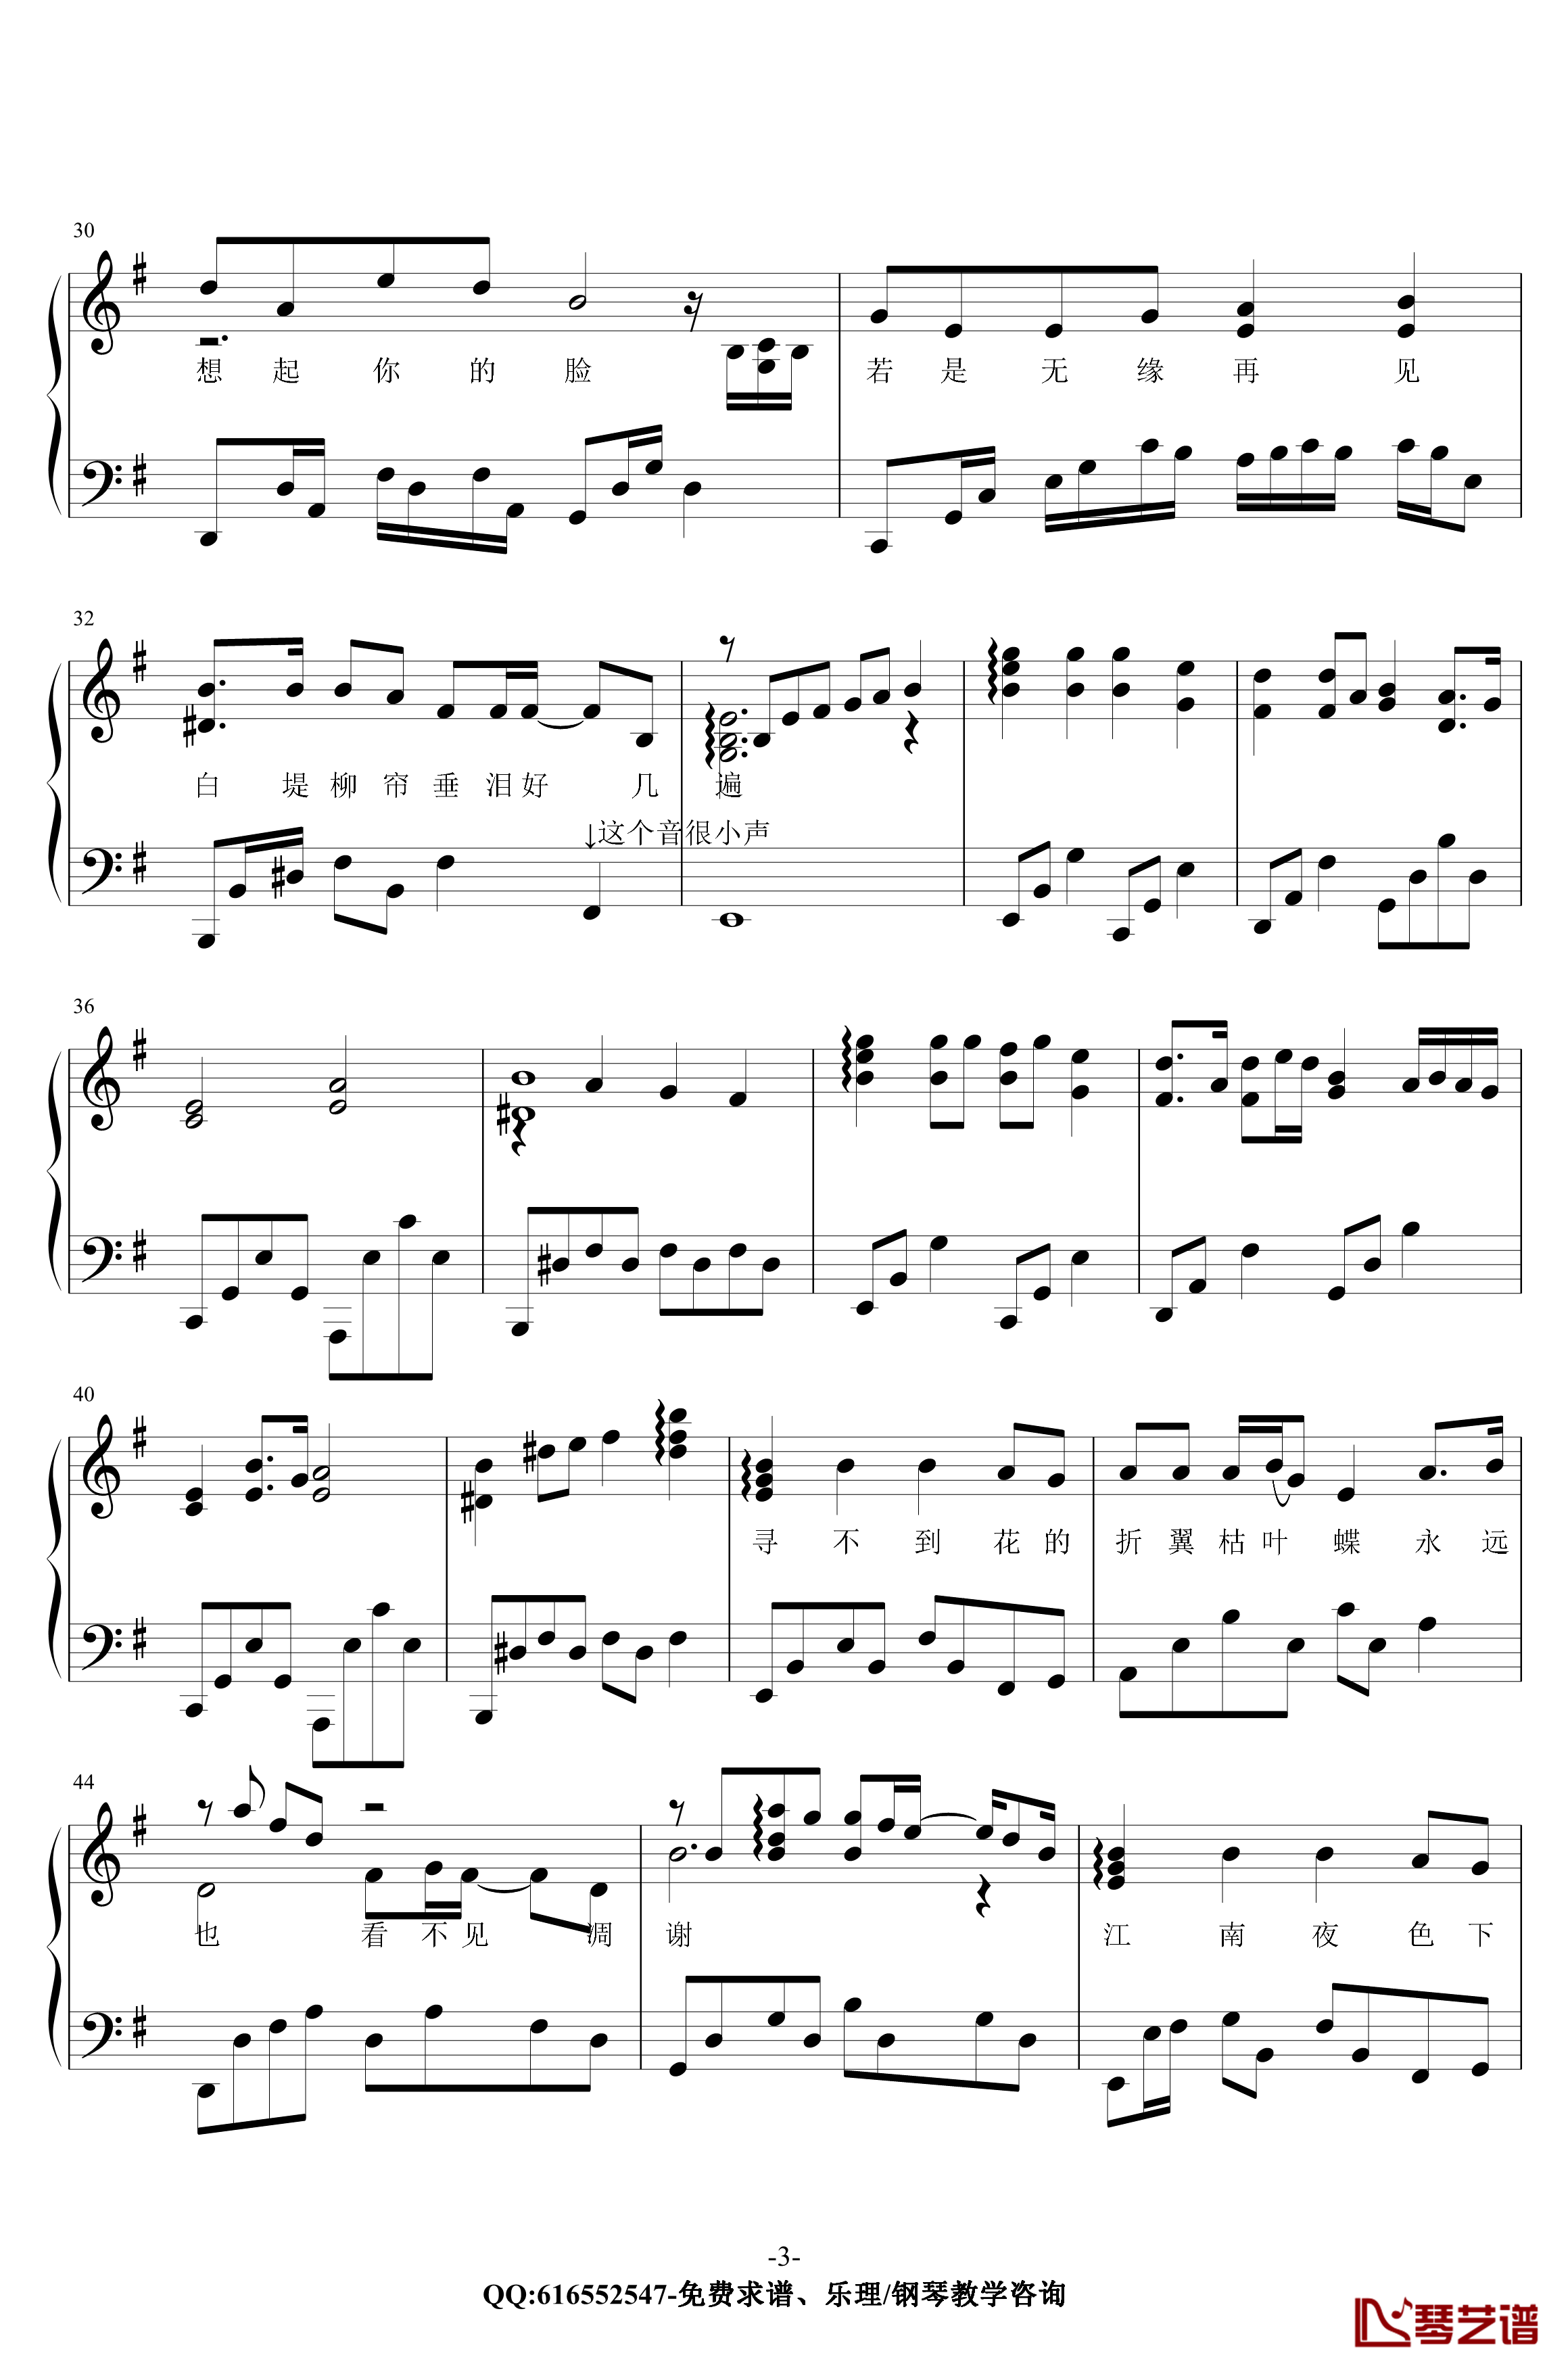 断桥残雪钢琴谱-金老师原声独奏版180117-许嵩3